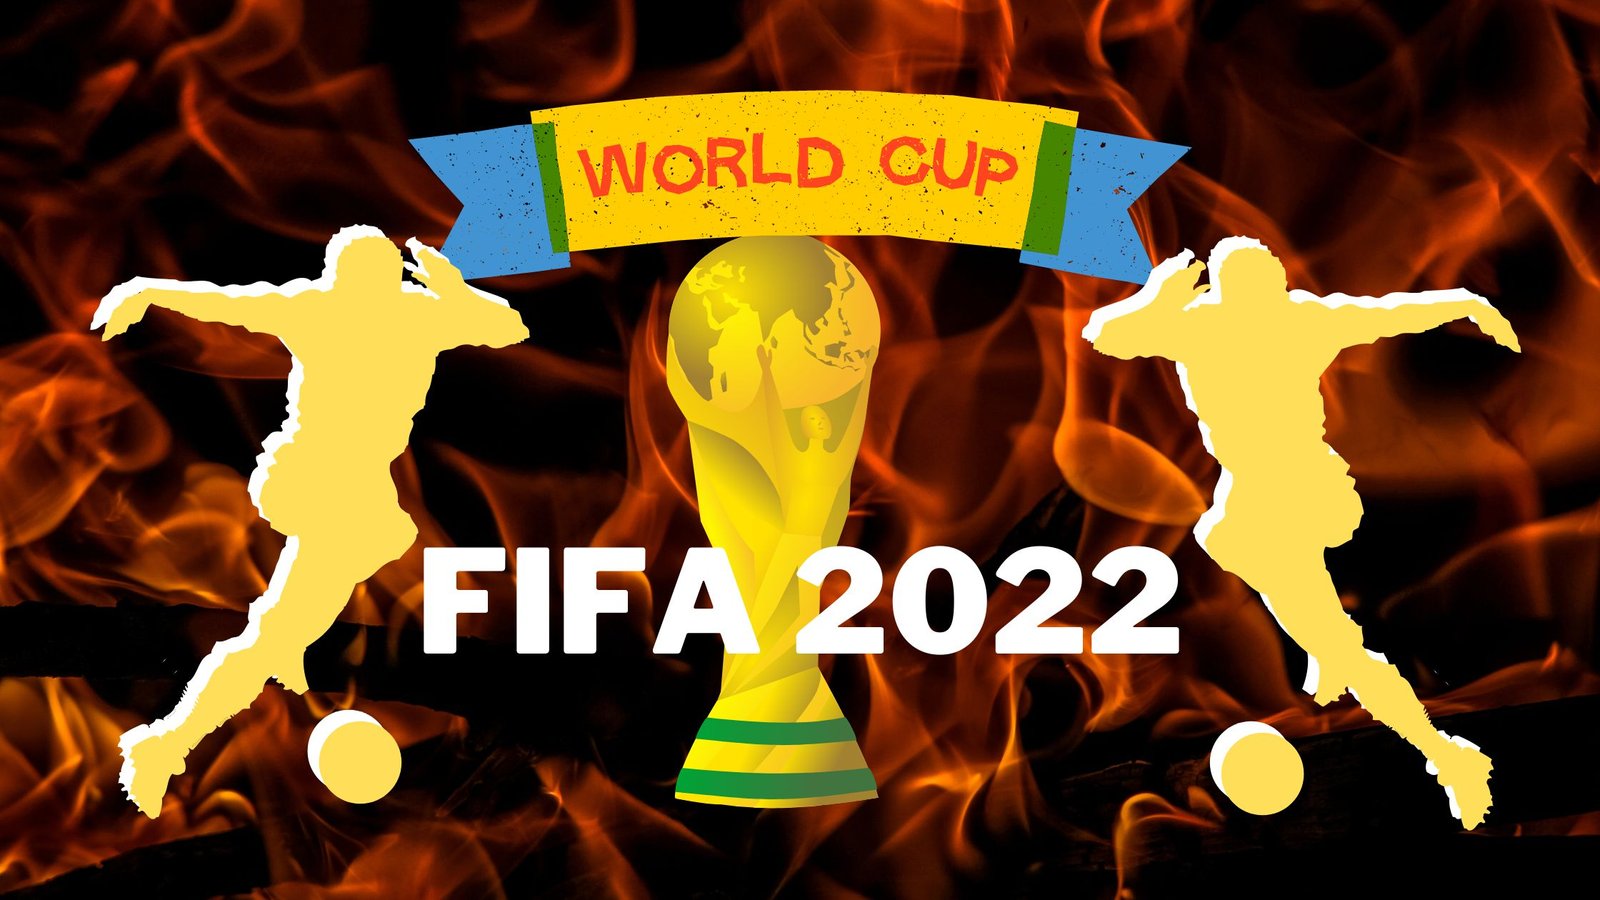 Fifa World Cup 2022 फीफा विश्व कप 2022 कतर टूर्नामेंट के लिए